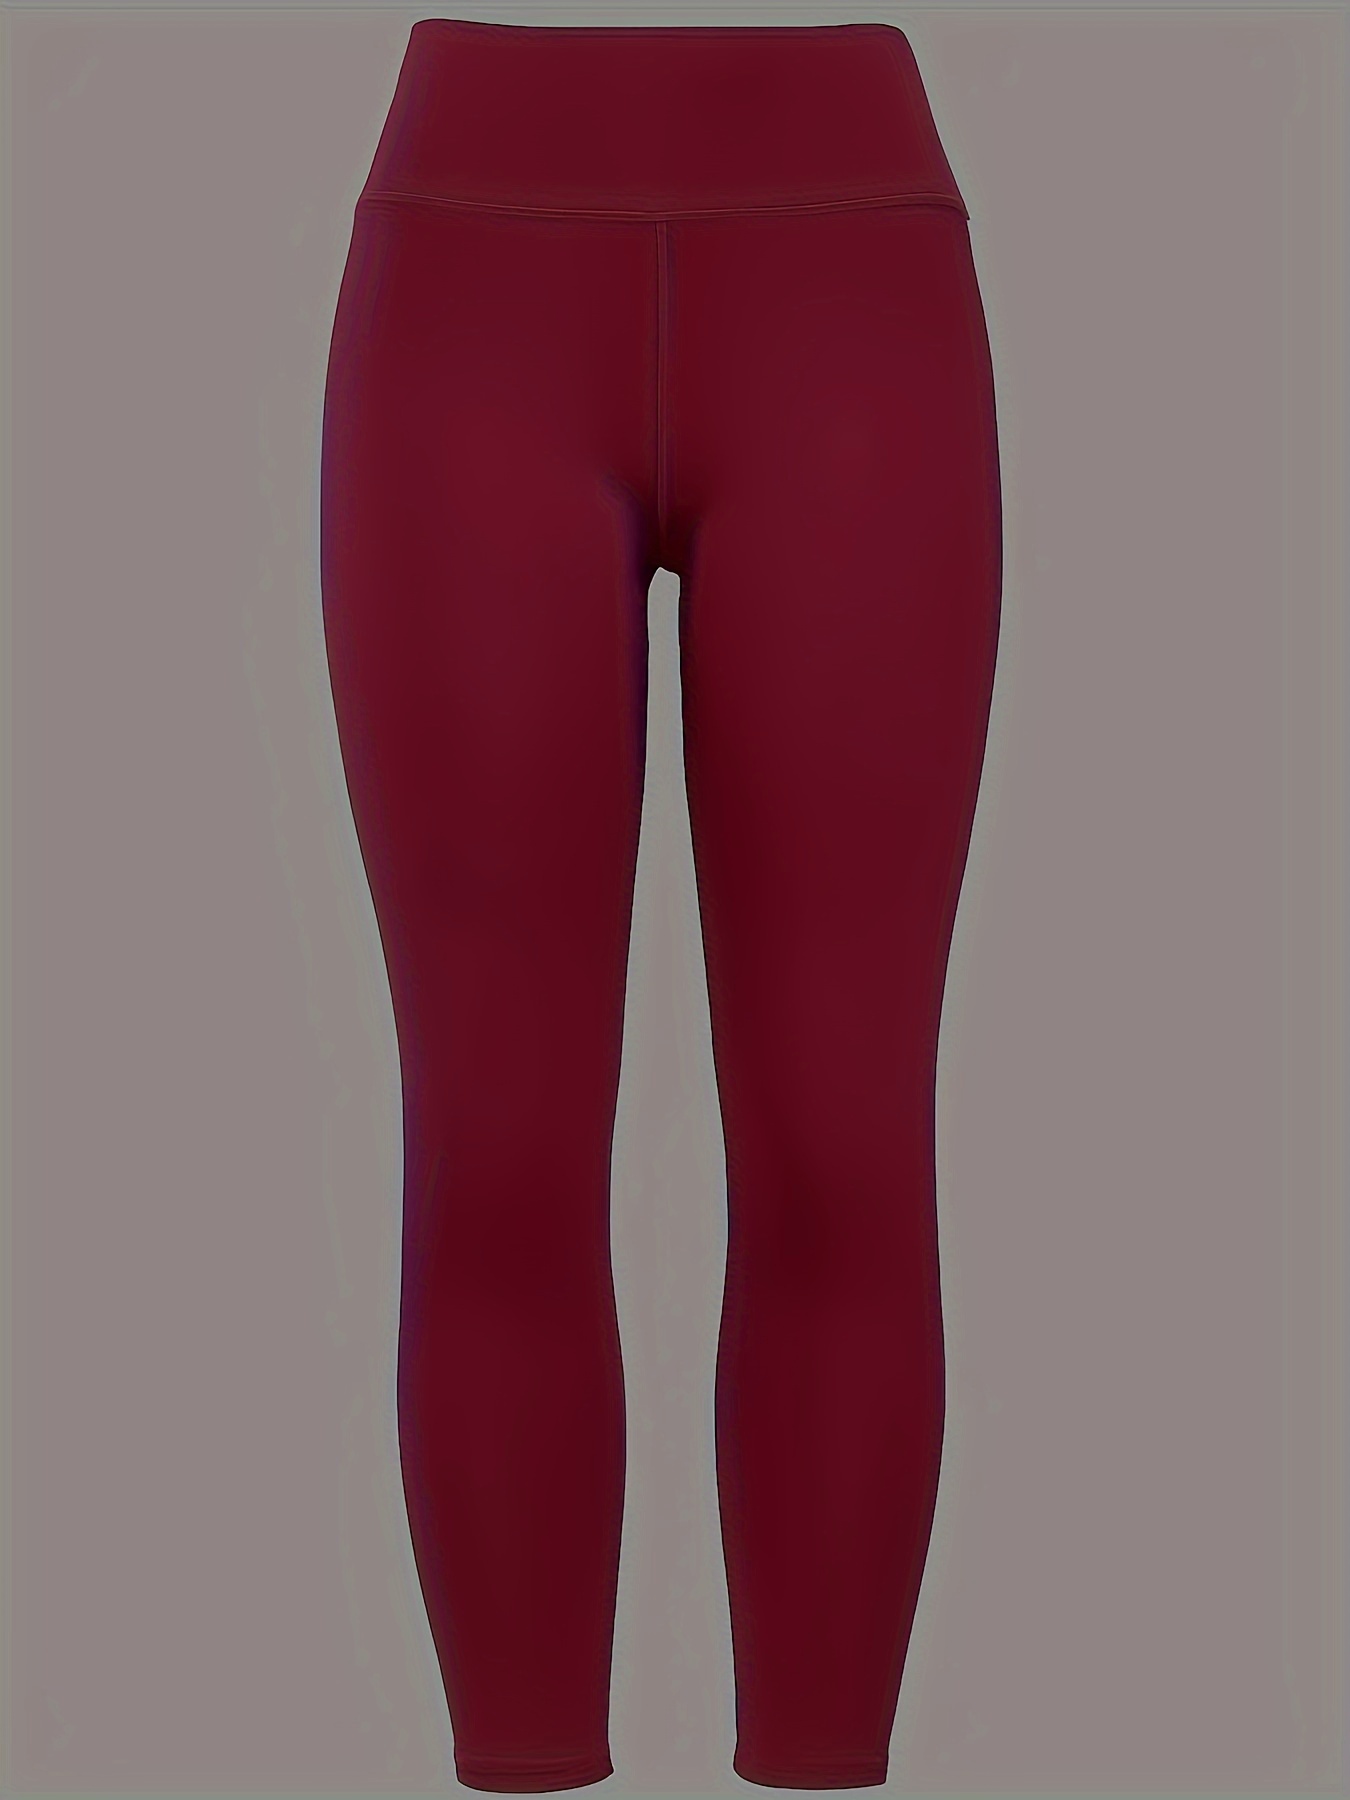 lululemon red crop legging with pocket and mesh - Depop